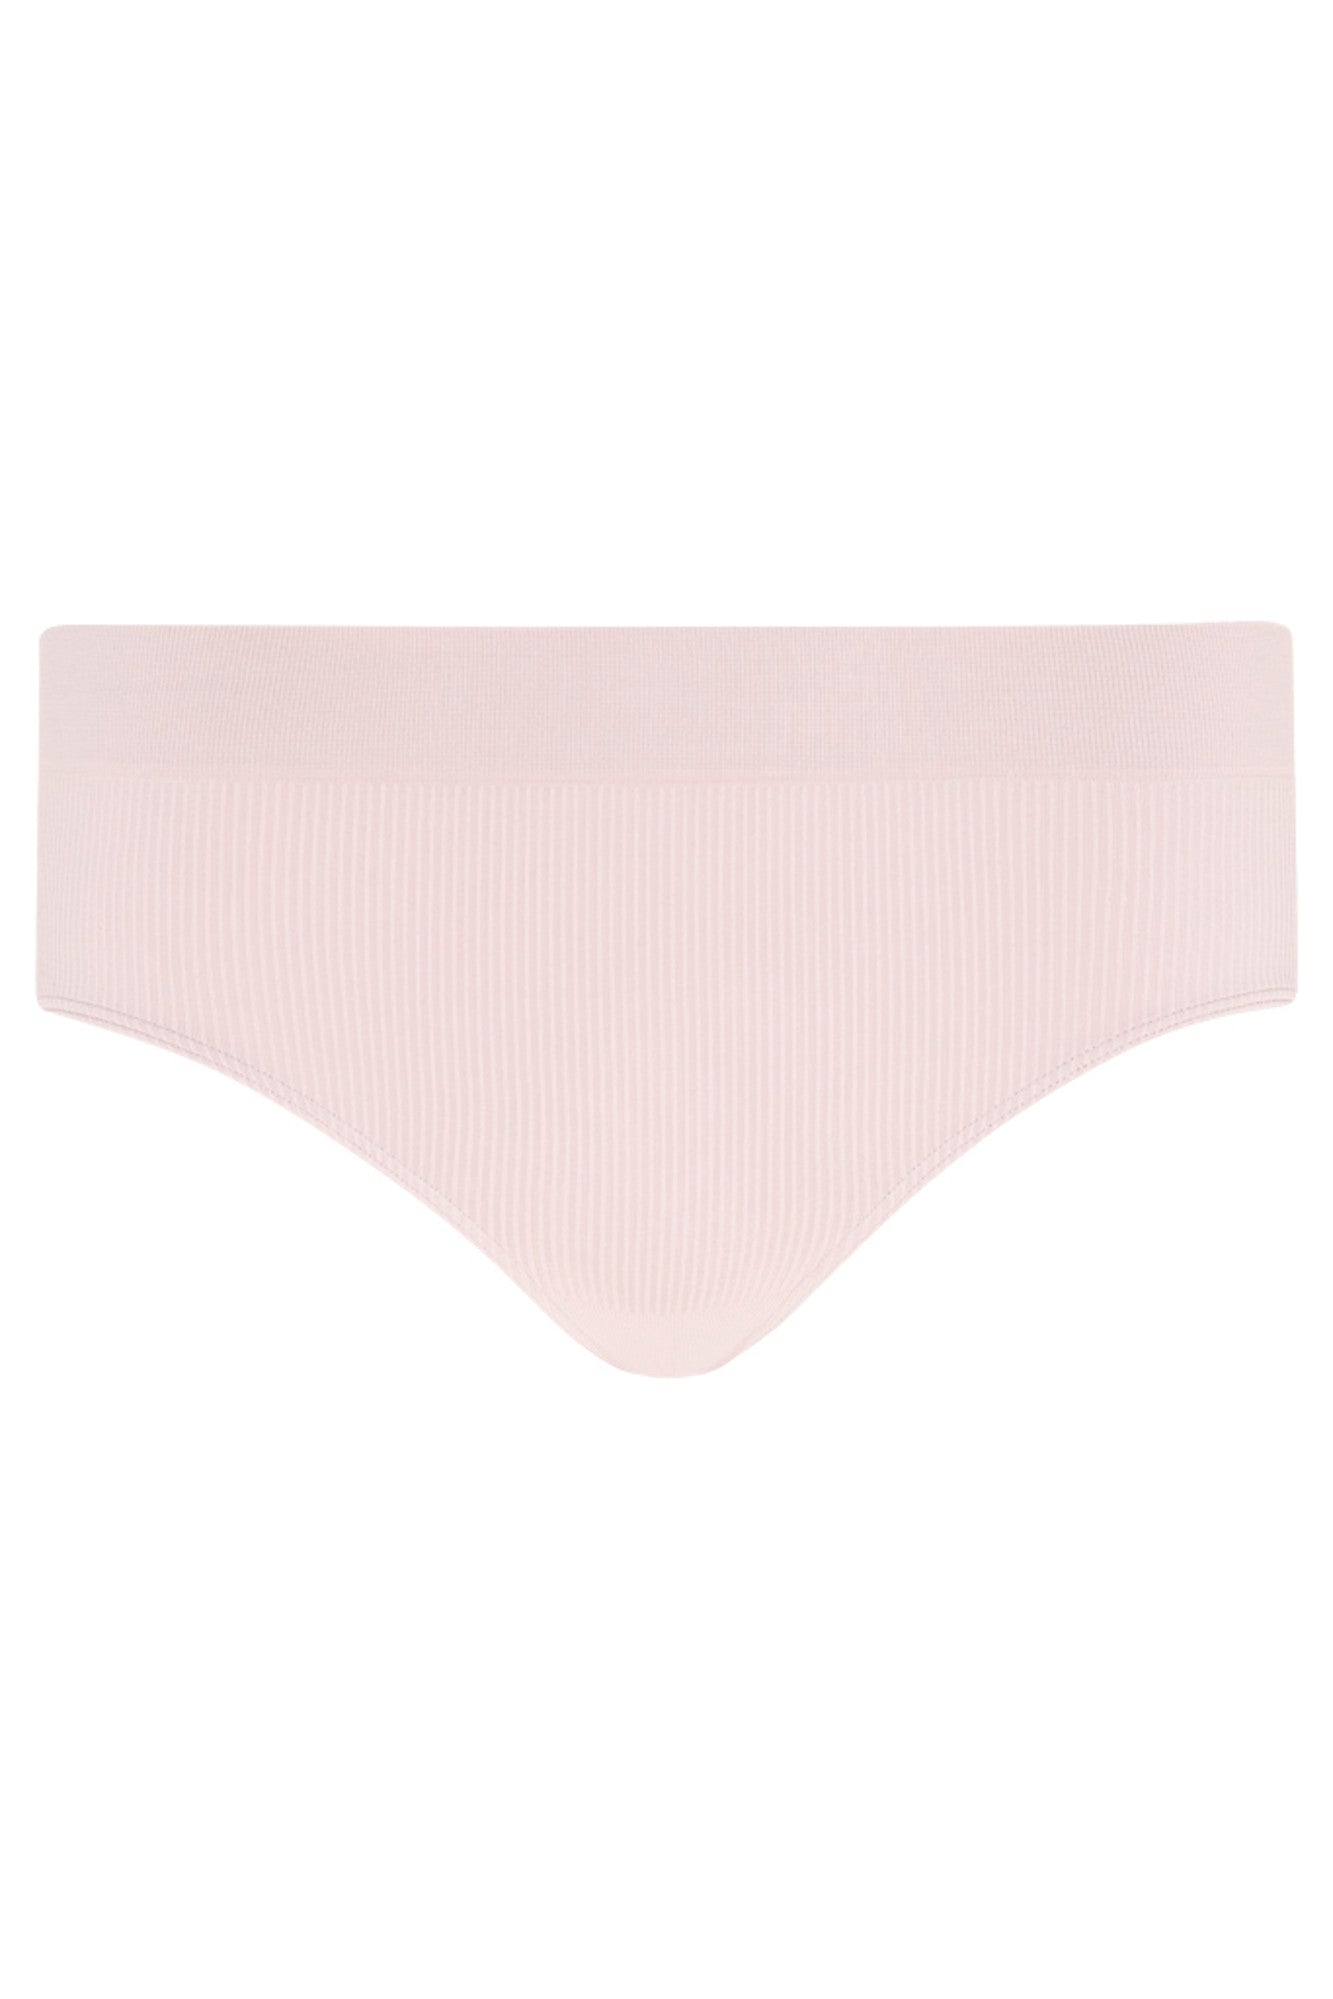  Jockey Women's Underwear EcoSeamfree Rib Thong, Pink